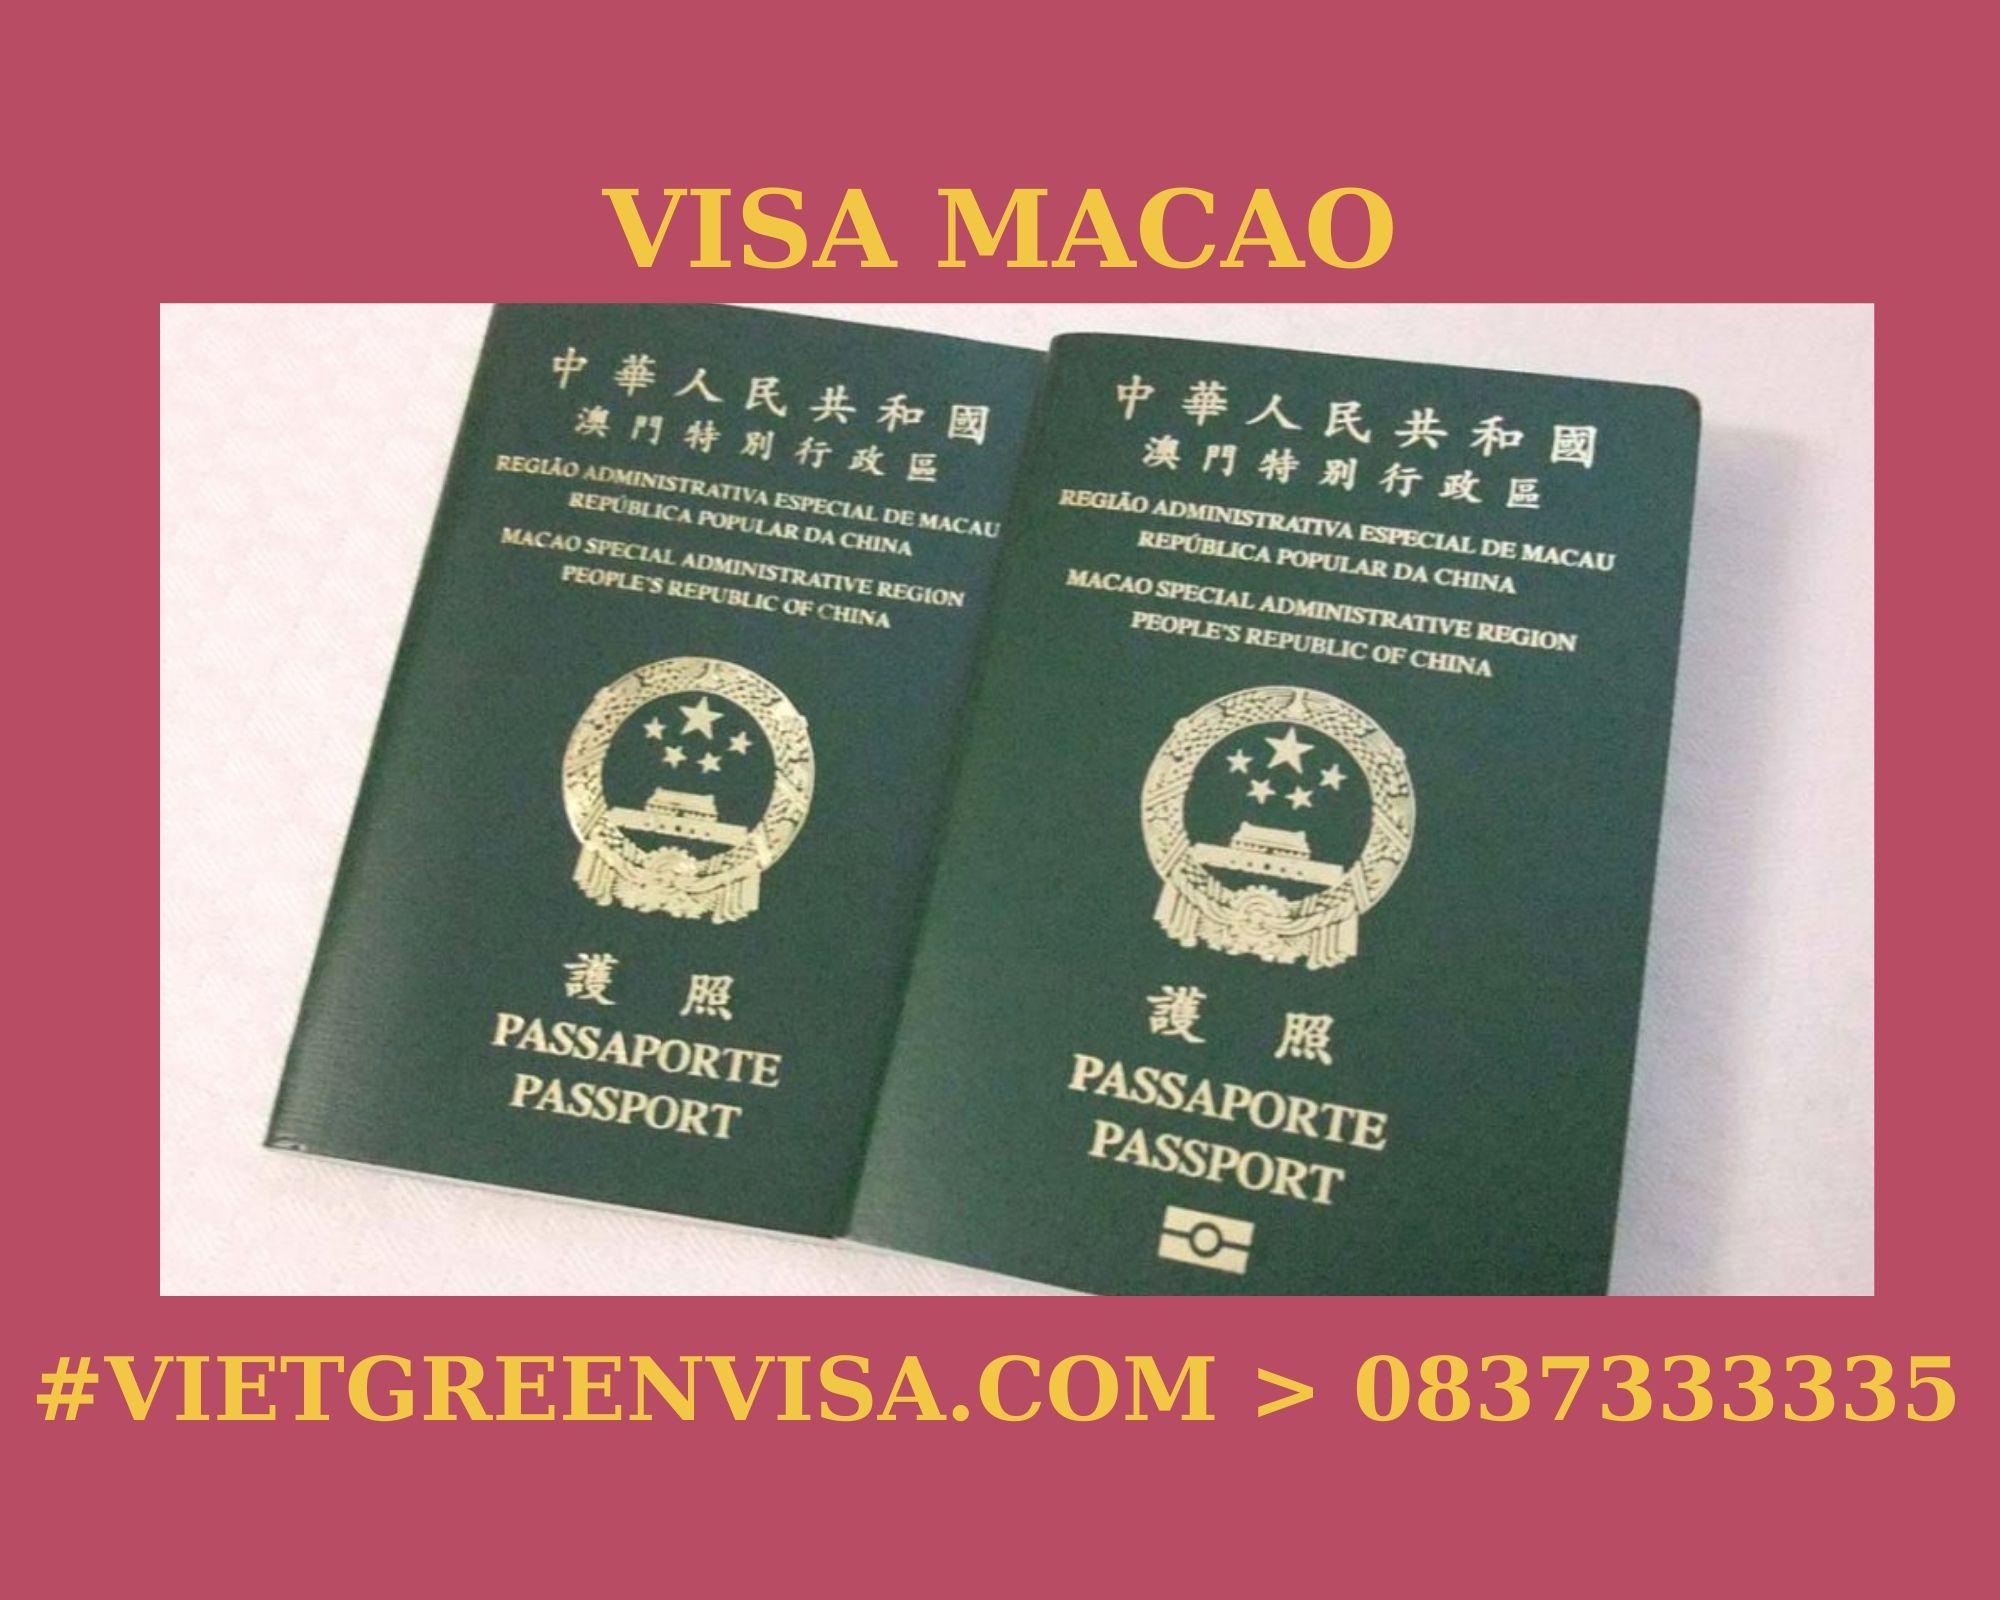 Làm Visa Macau thăm thân uy tín, nhanh chóng, giá rẻ